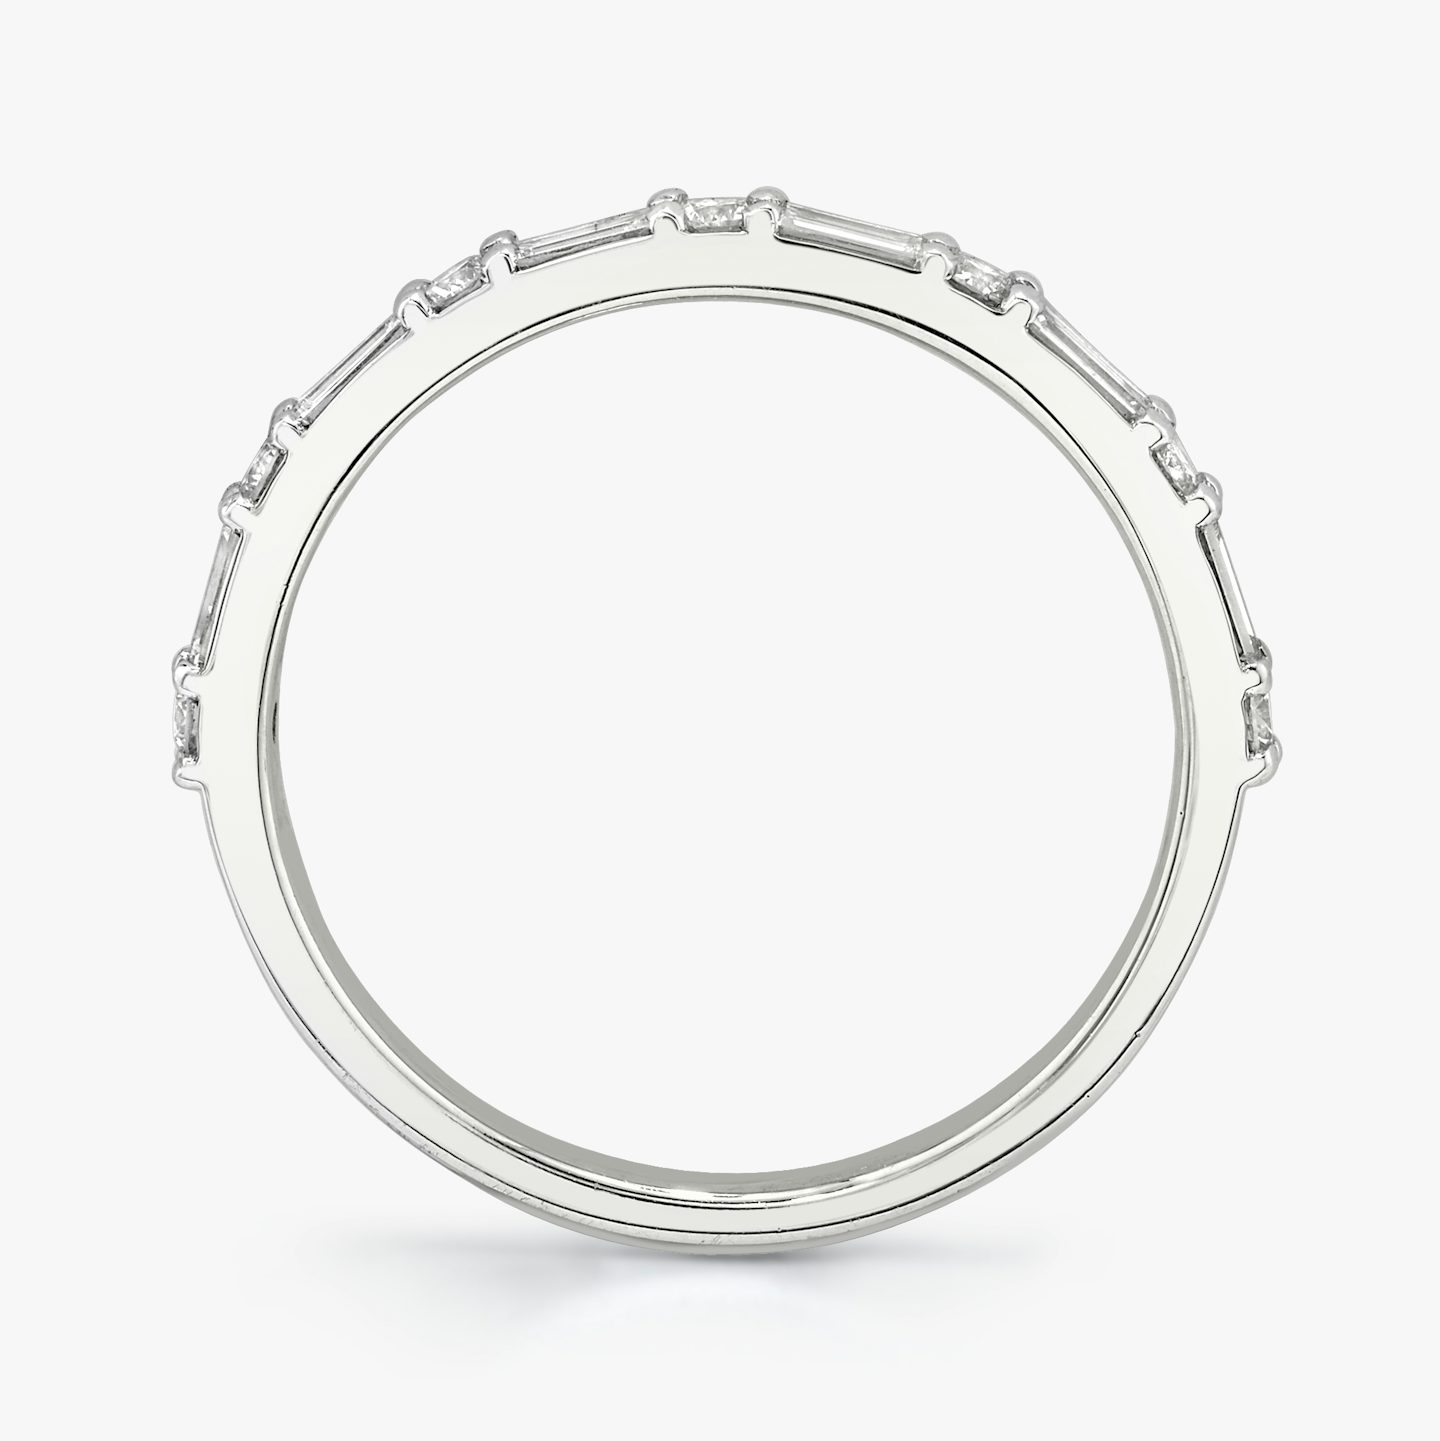 Alternating Shapes Ring | Rund | Platin | Ringstil: Halb besetzt